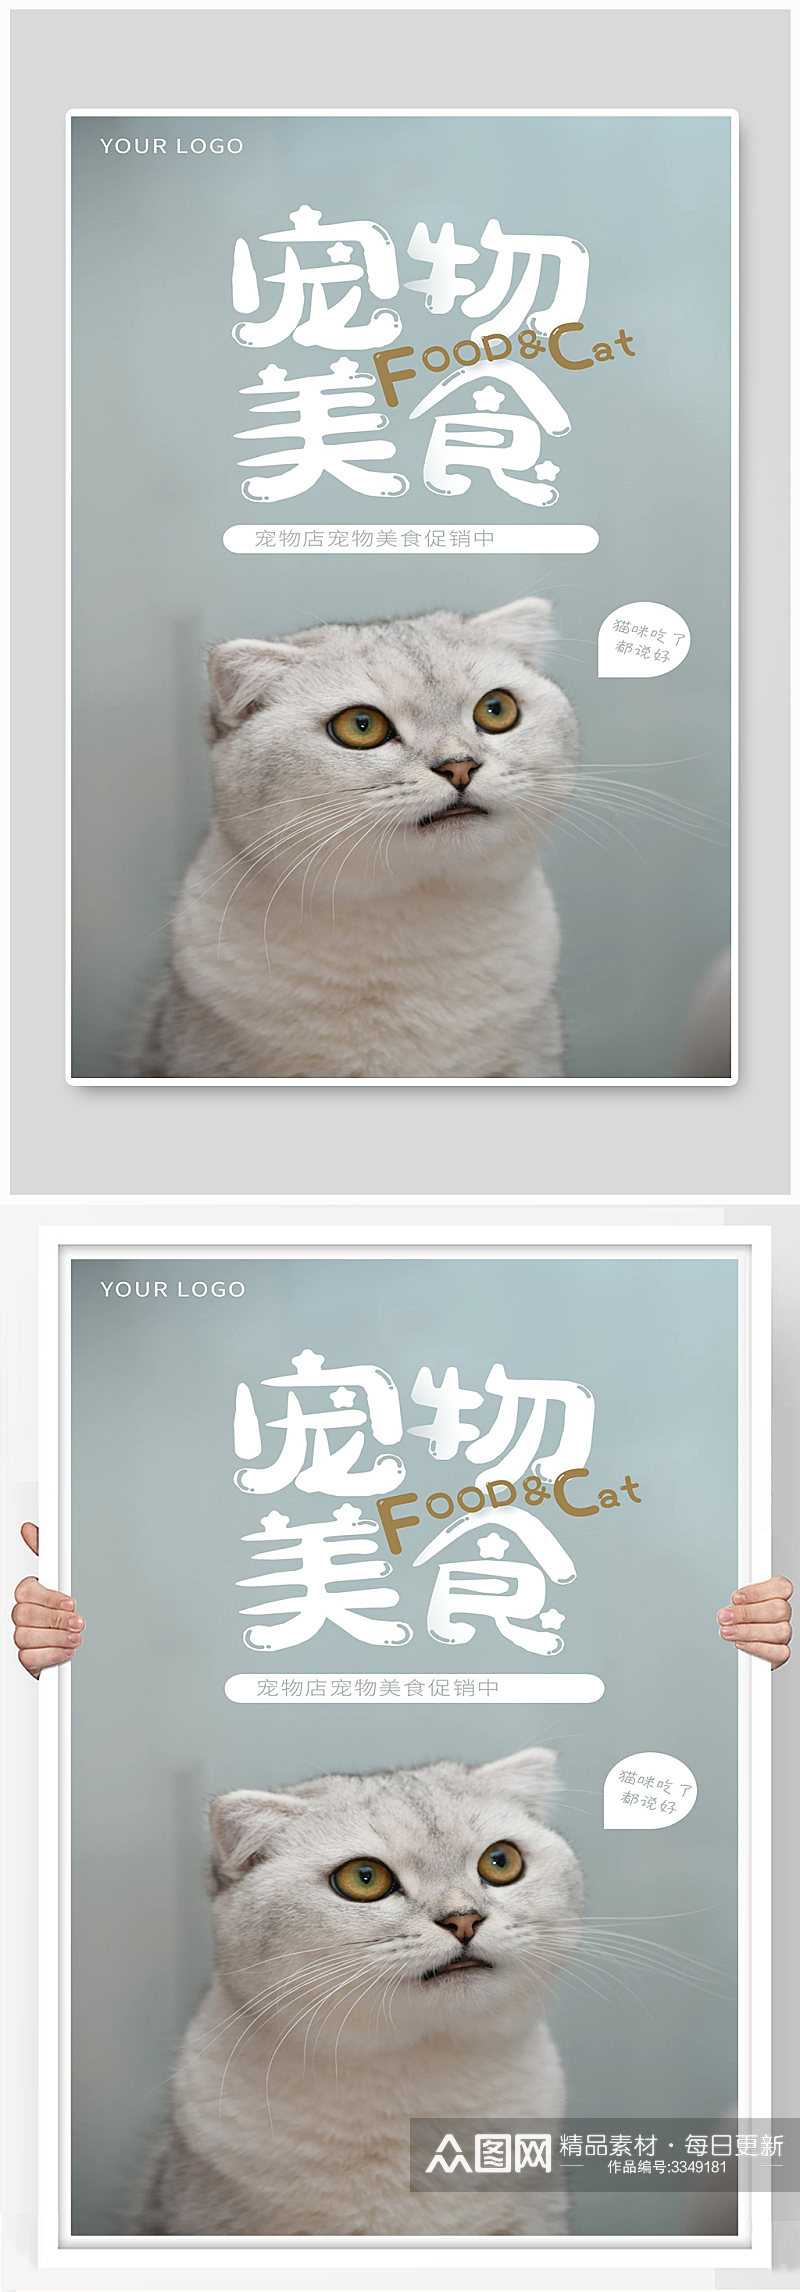 宠物店宠物美食促销中猫波斯猫素材